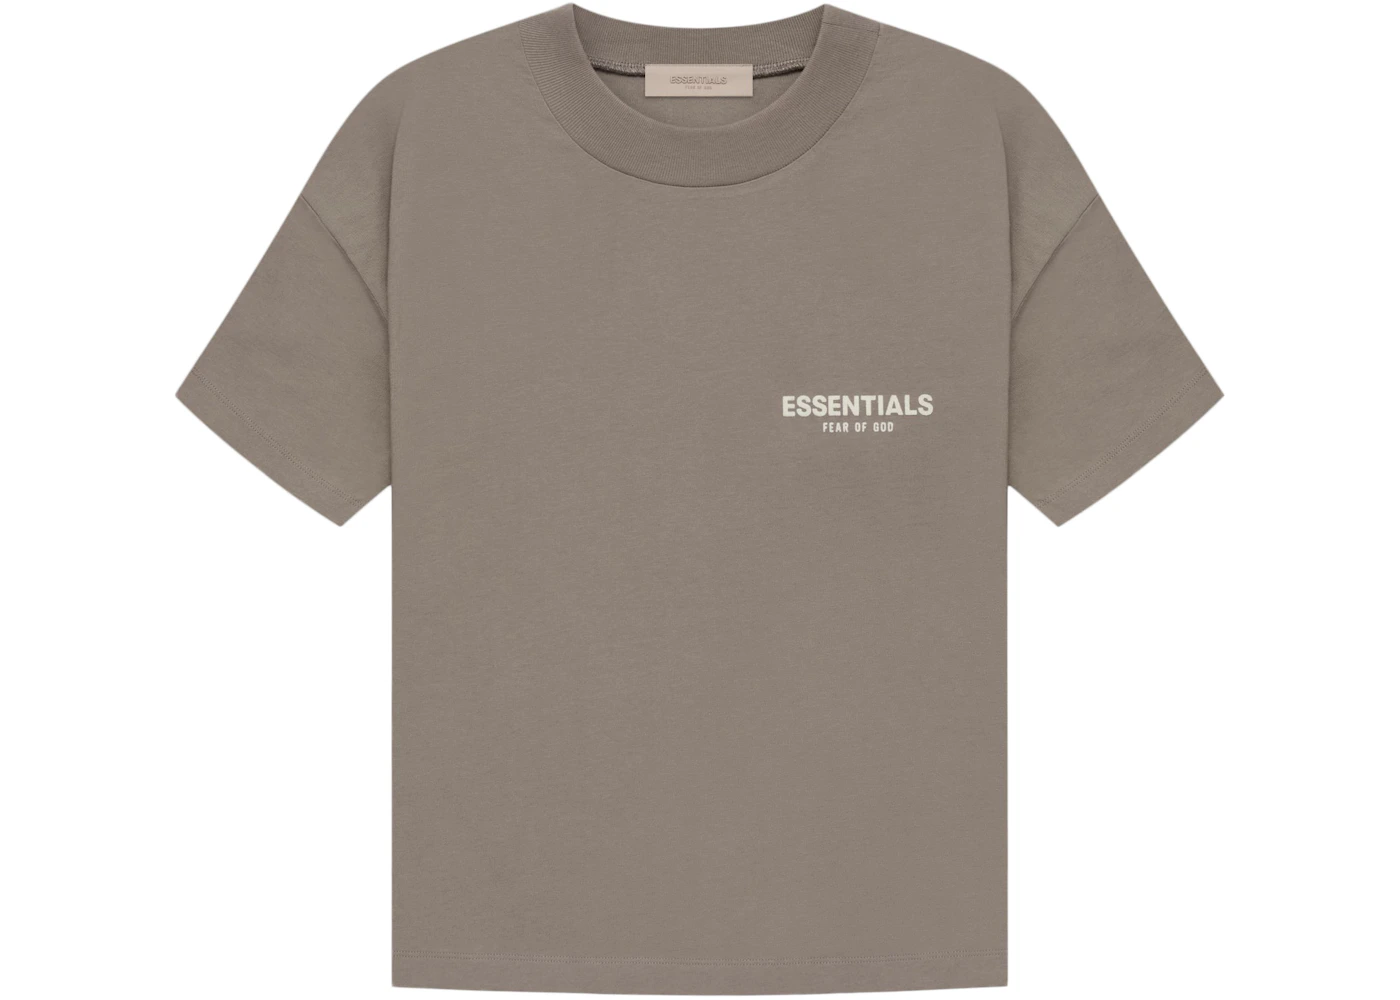 Fear of God Essentials T-shirt Desert Taupe Men's - SS22 - US